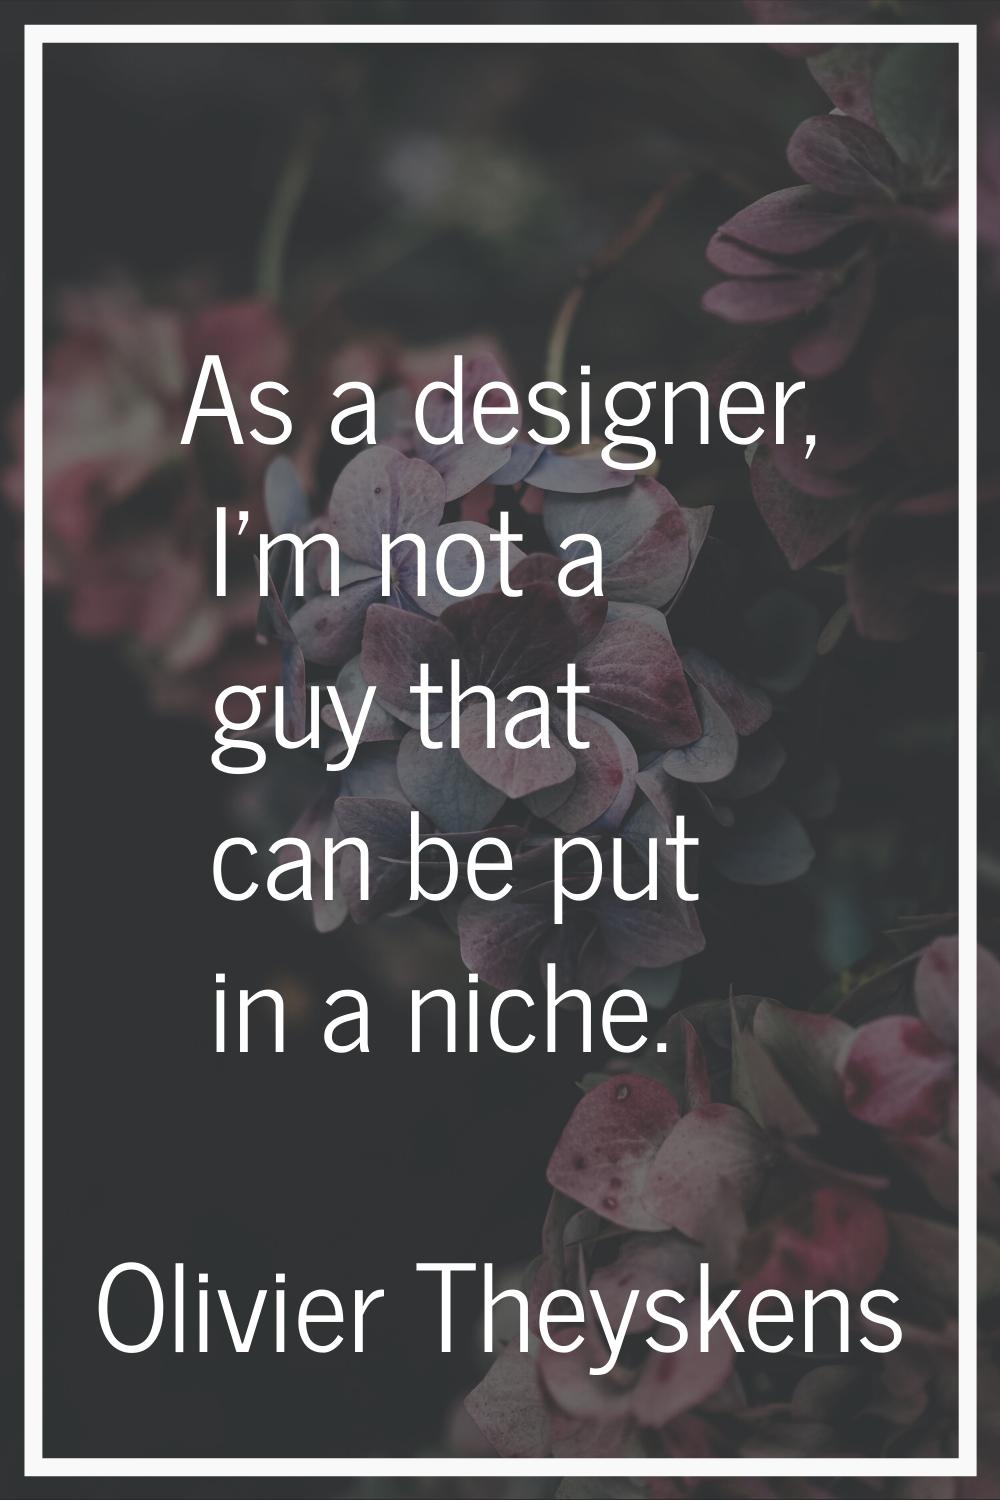 As a designer, I'm not a guy that can be put in a niche.